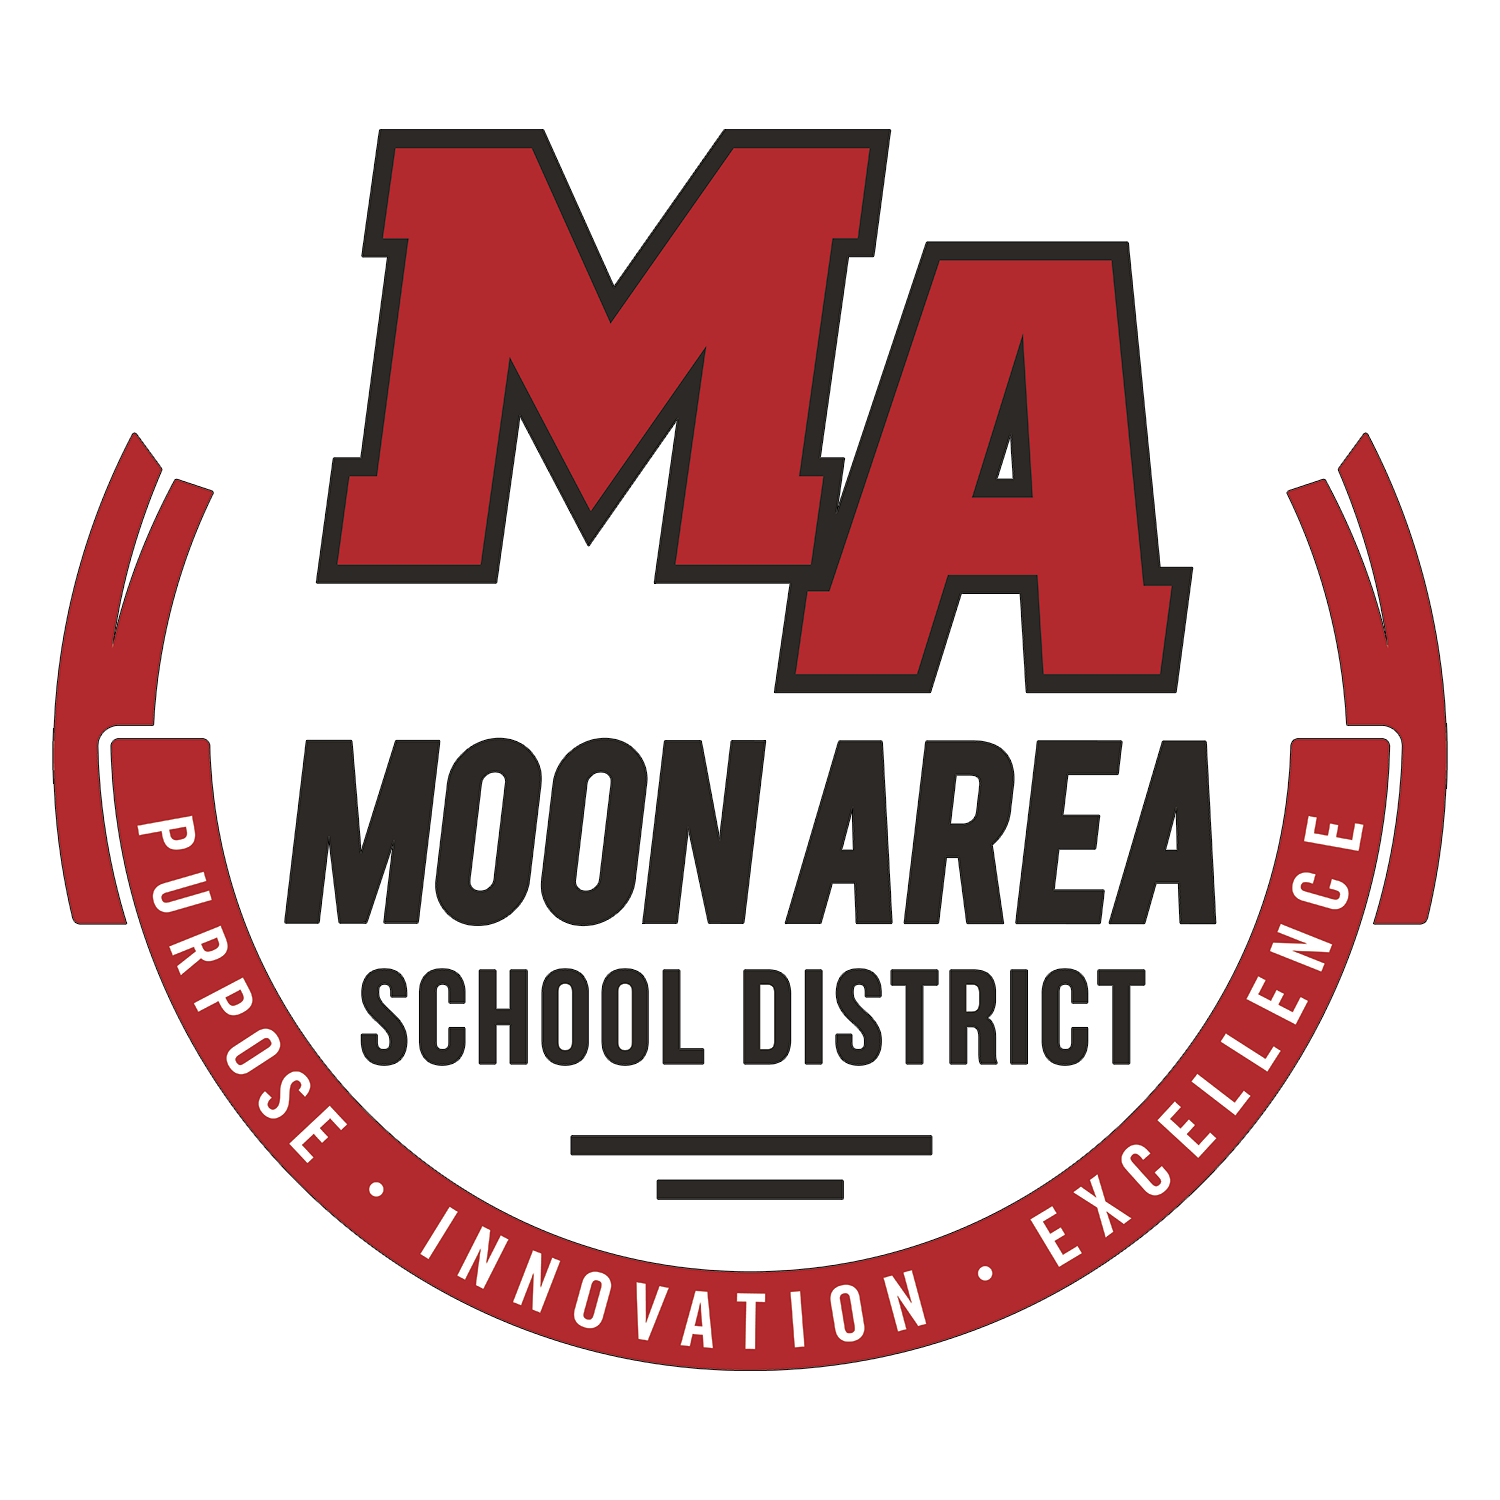 月亮区学区标志